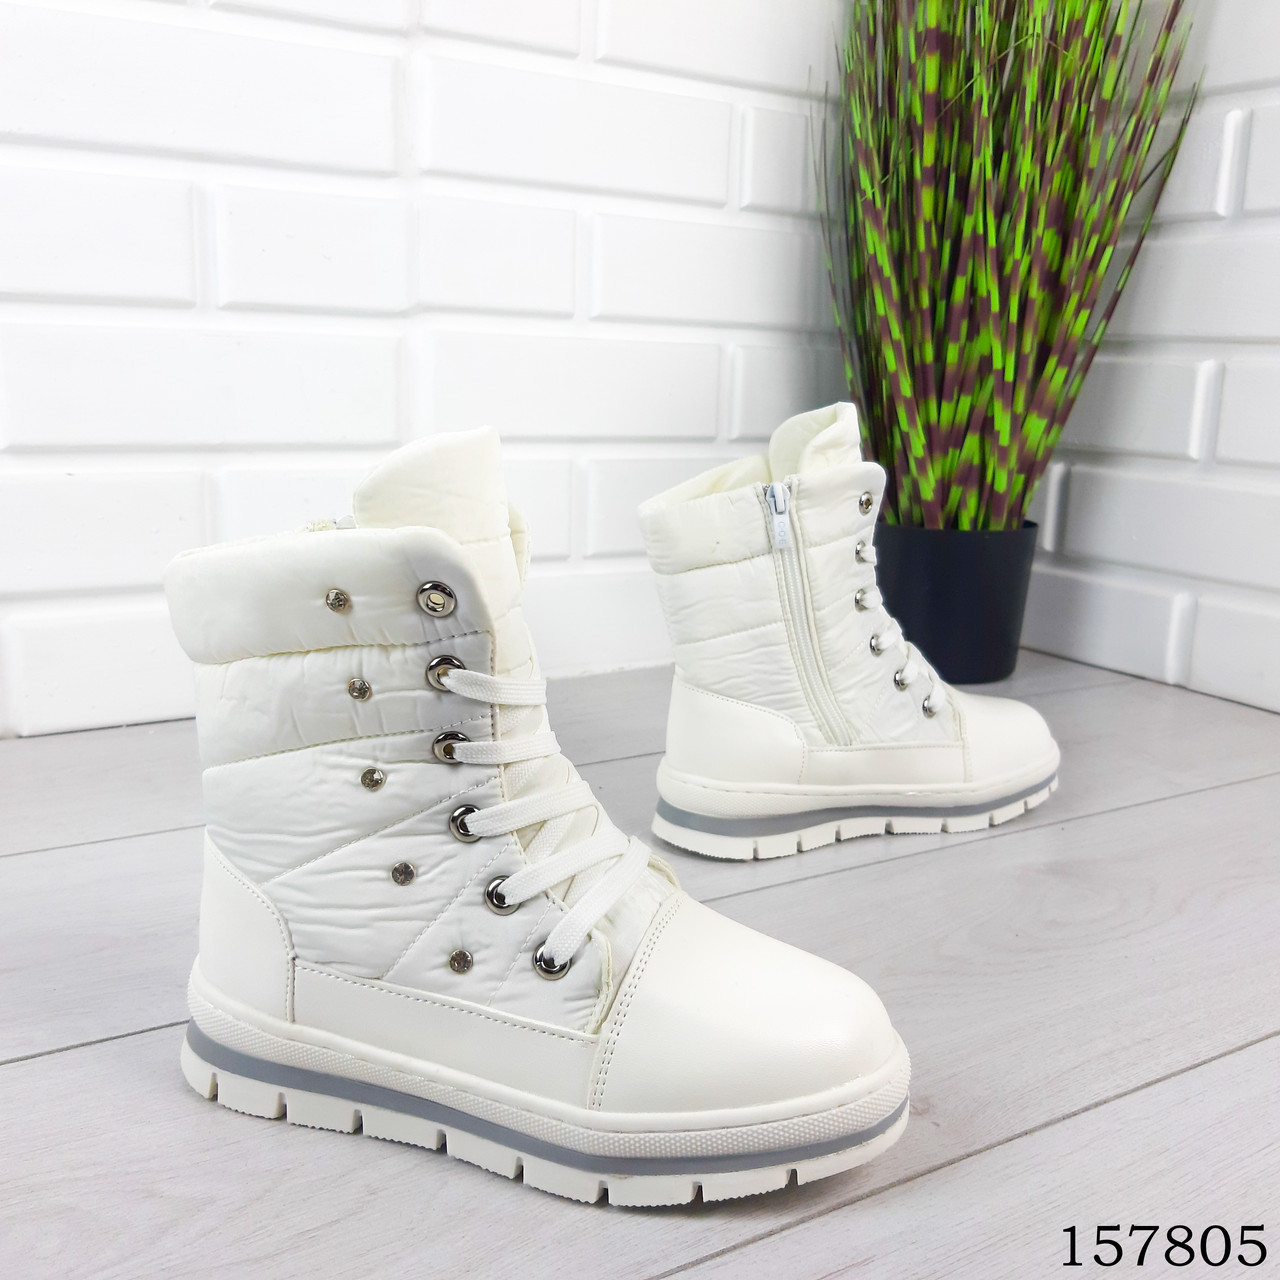 Дитячі, підліткові чоботи зимові на шнурках, білого кольору з екошкіри та плащової тканини, всередині тепле екоче хутро.